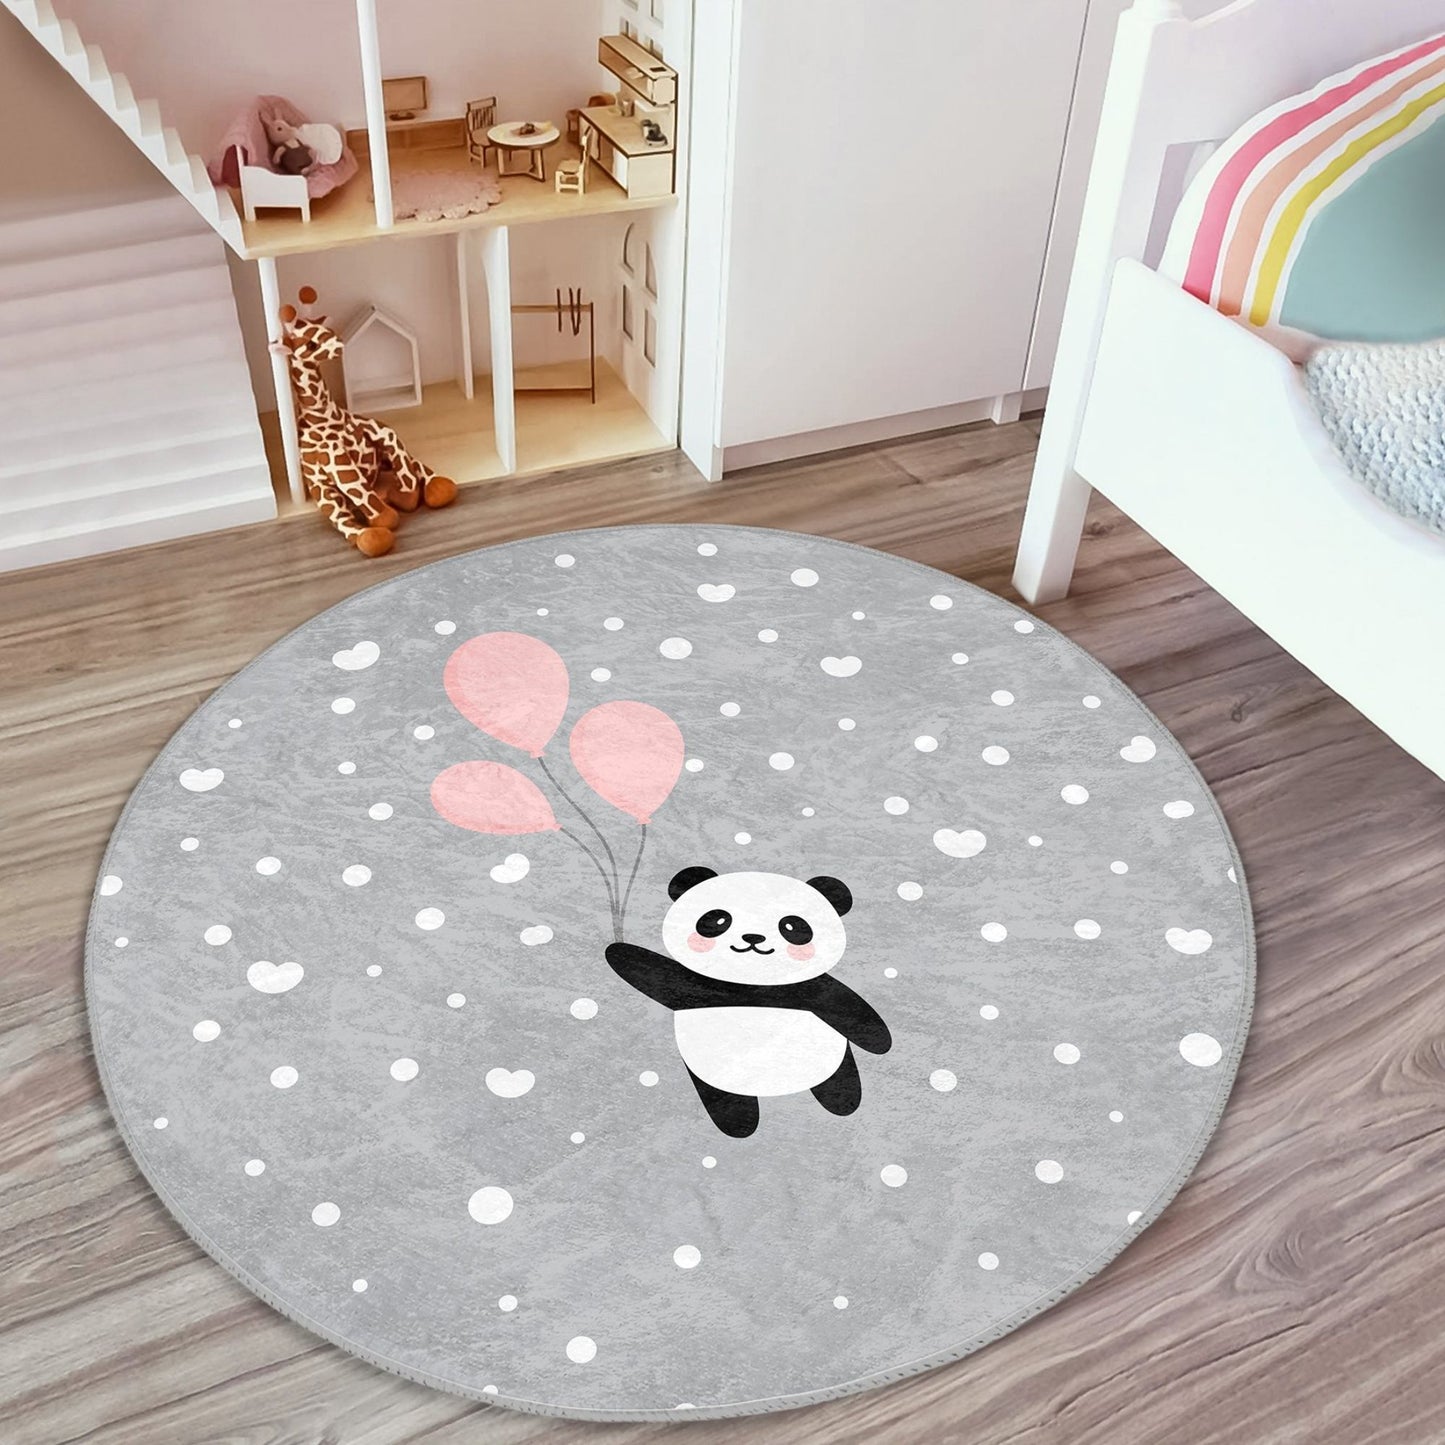 Sweet Panda Design Children's Floor Covering